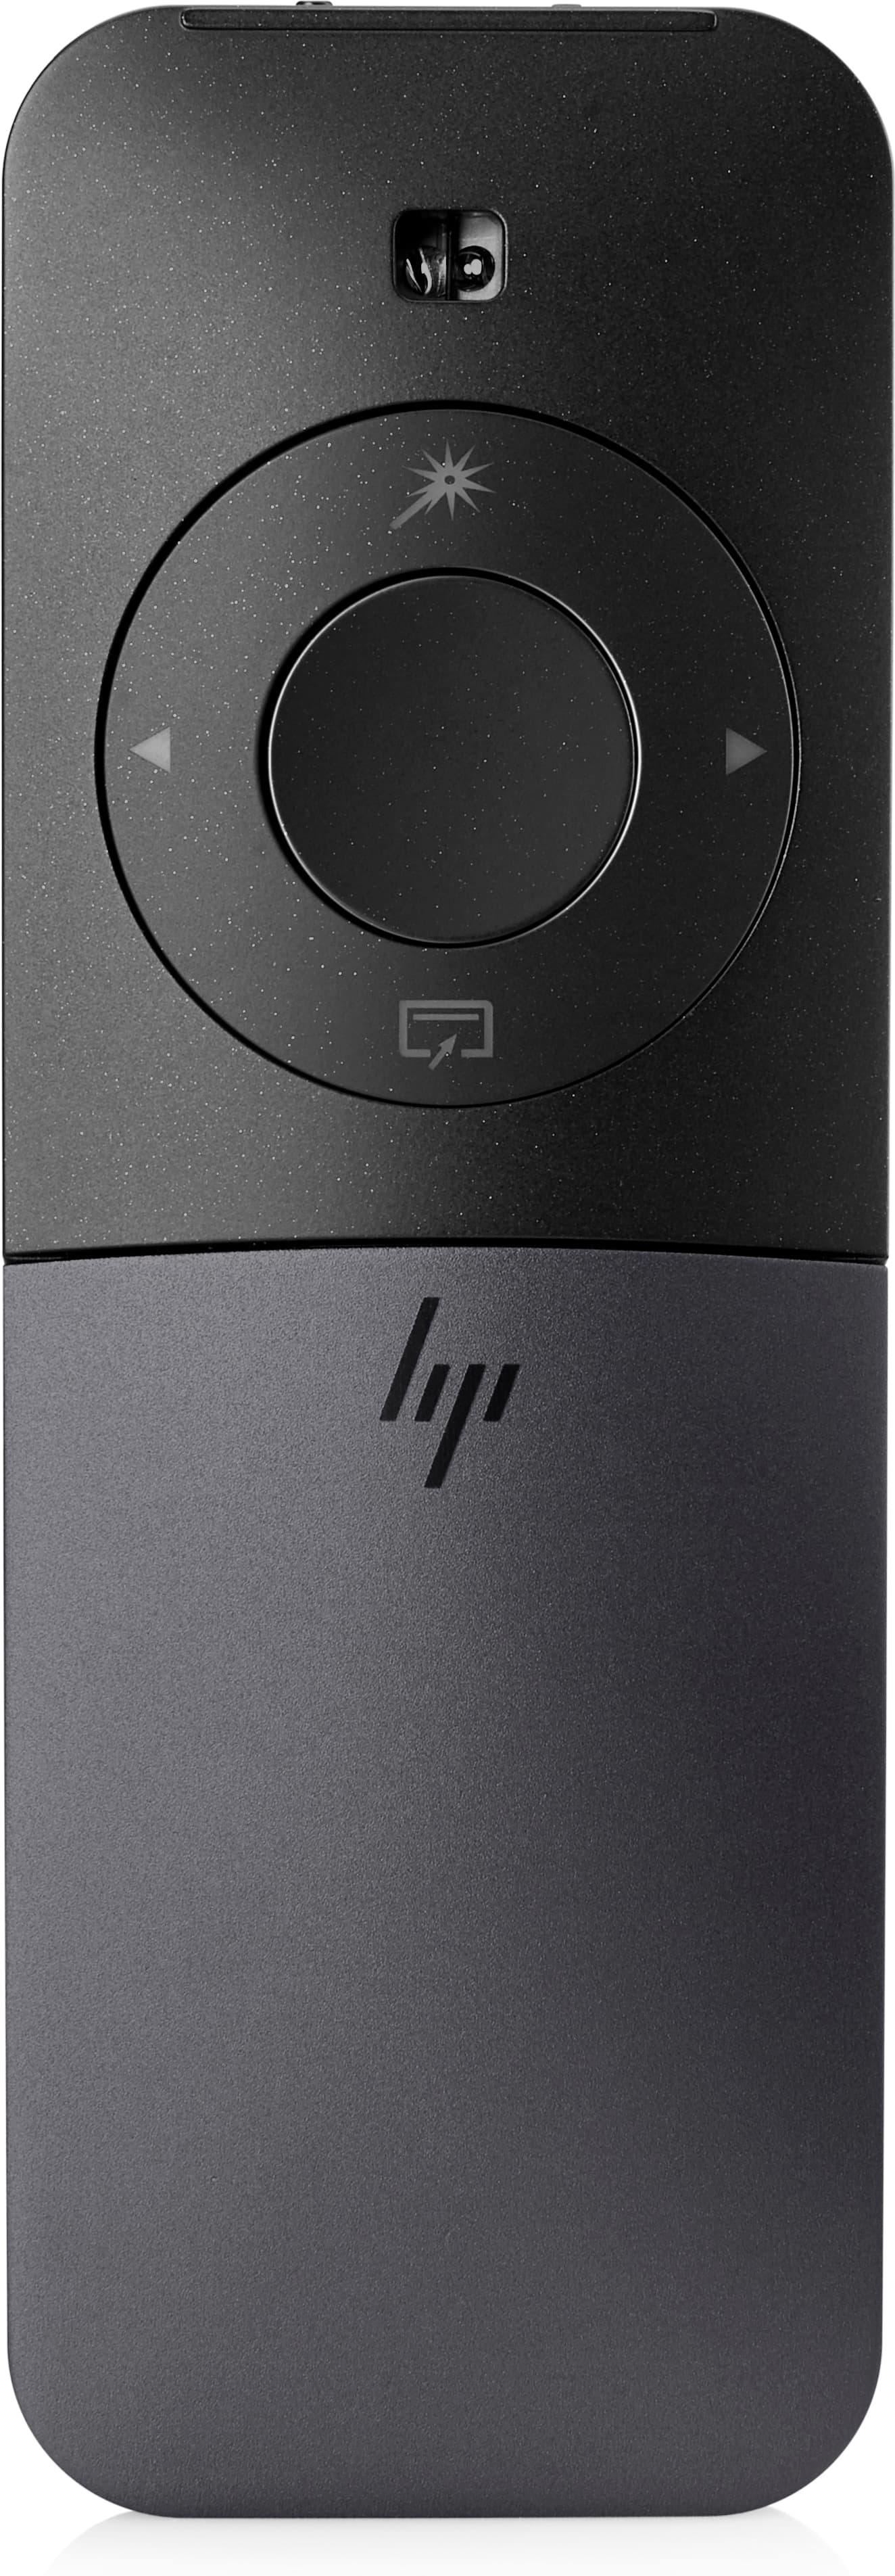 HP Elite Presenter - Beidhändig - Optisch - Bluetooth - 1200 DPI - Schwarz